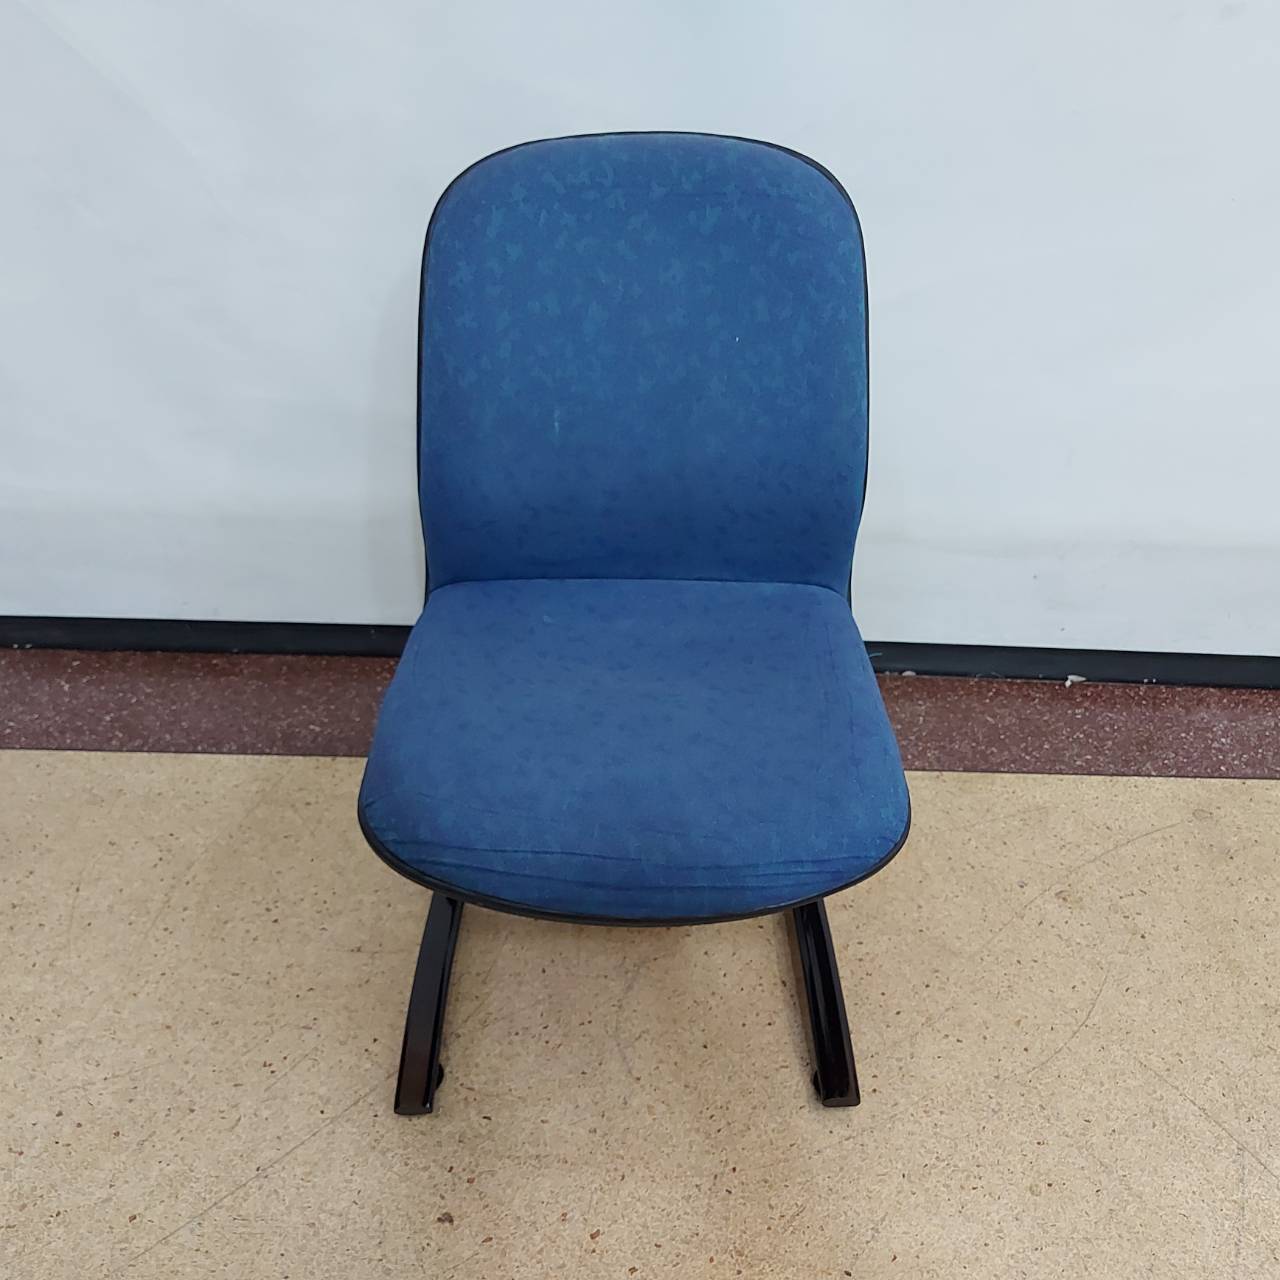 เก้าอี้สำนักงานผ้าสีน้ำเงินขาแอล